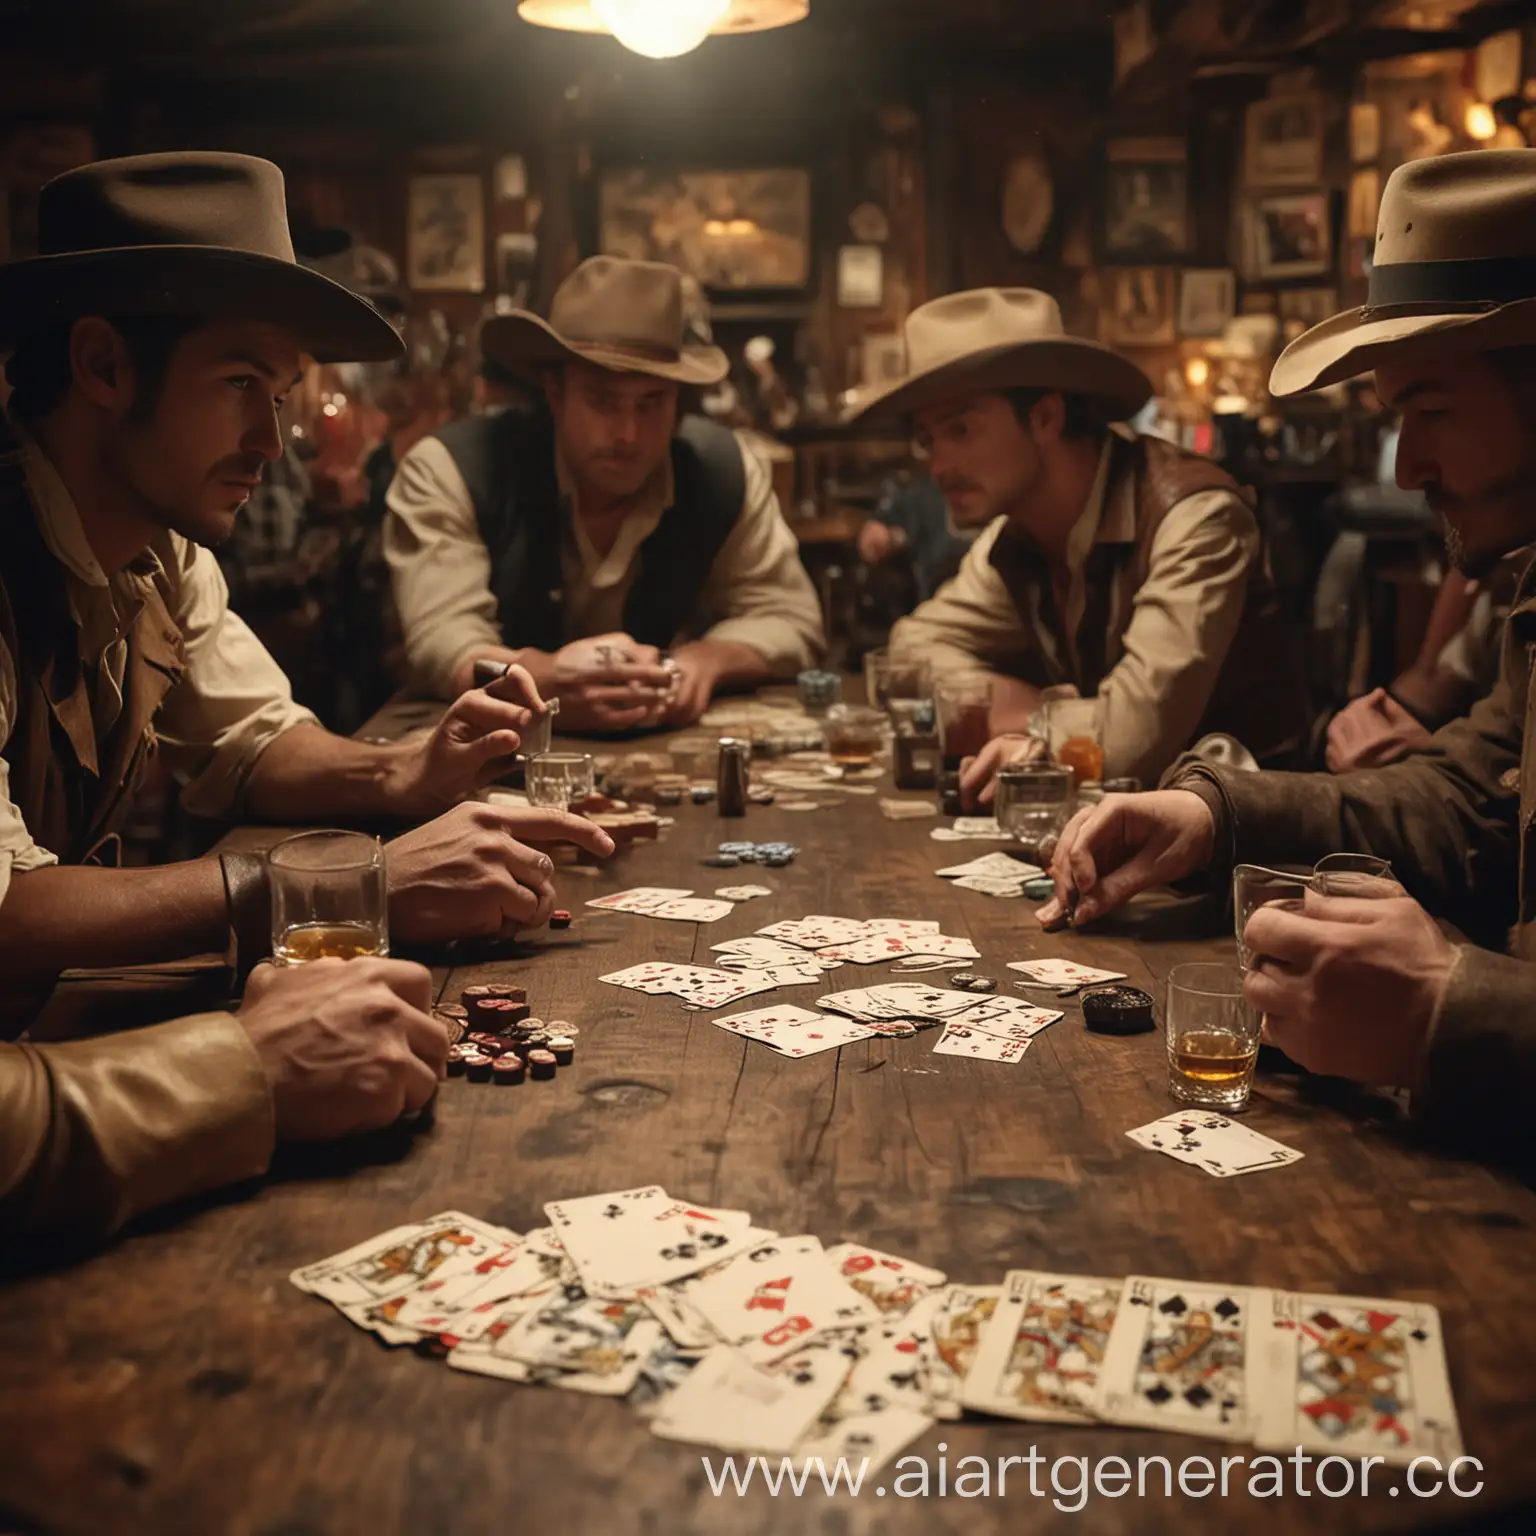 Стол в баре, на нём фокус камеры. На столе лежат лежат карты, идёт игра в покер, вокруг ковбойская шляпа, сигары, пойло и тому подобное, лиц людей не видно. Действие в ковбойском баре 18 века. Картинка должна выглядеть как фото 16х9.